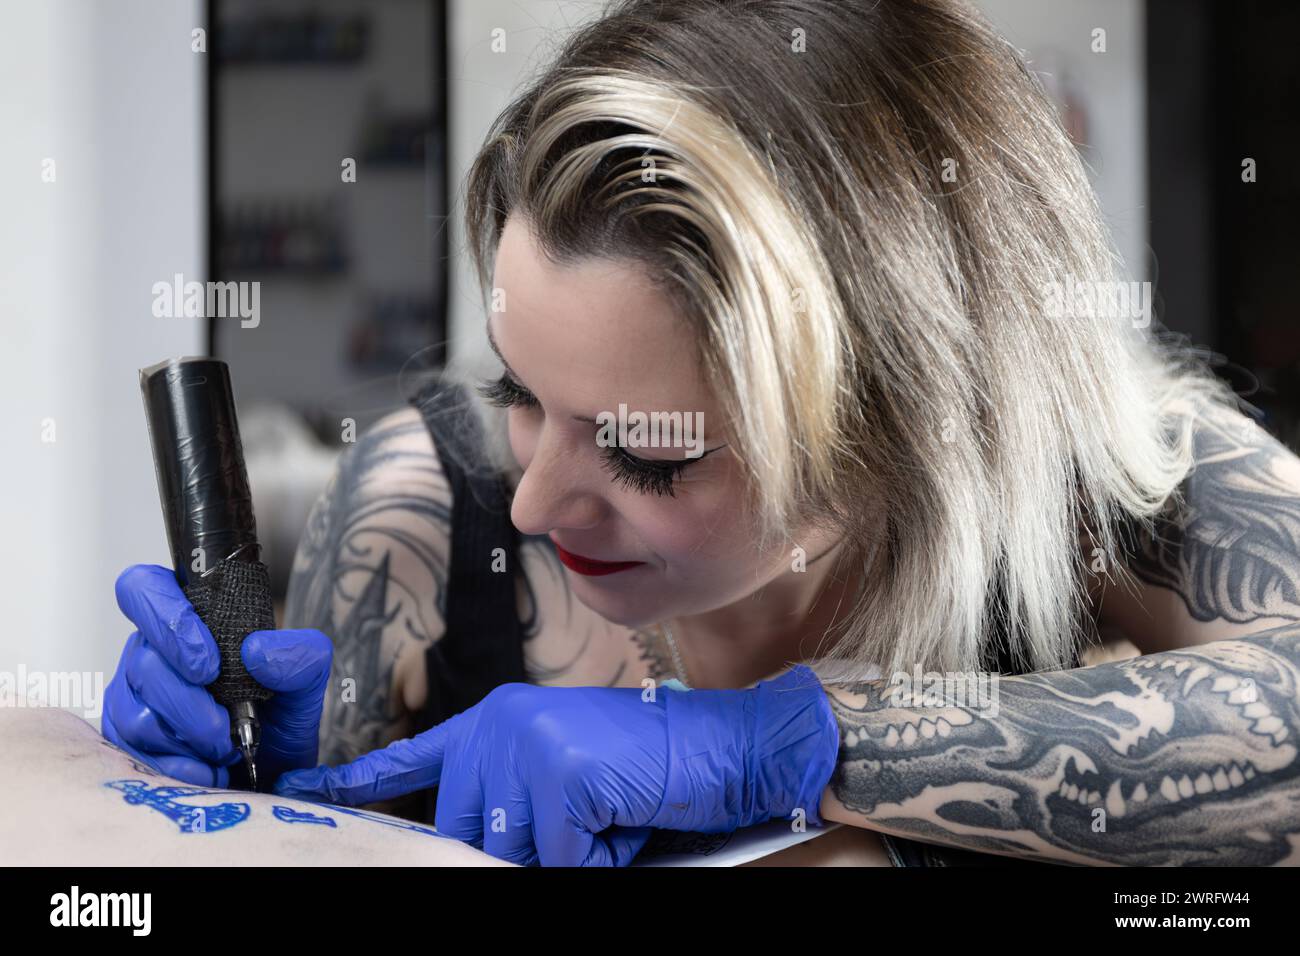 Foto horizontal Con una expresión serena, una artista del tatuaje está completamente inmersa en entintar un diseño complejo, mostrando su talento innato y su mano firme. Foto de stock